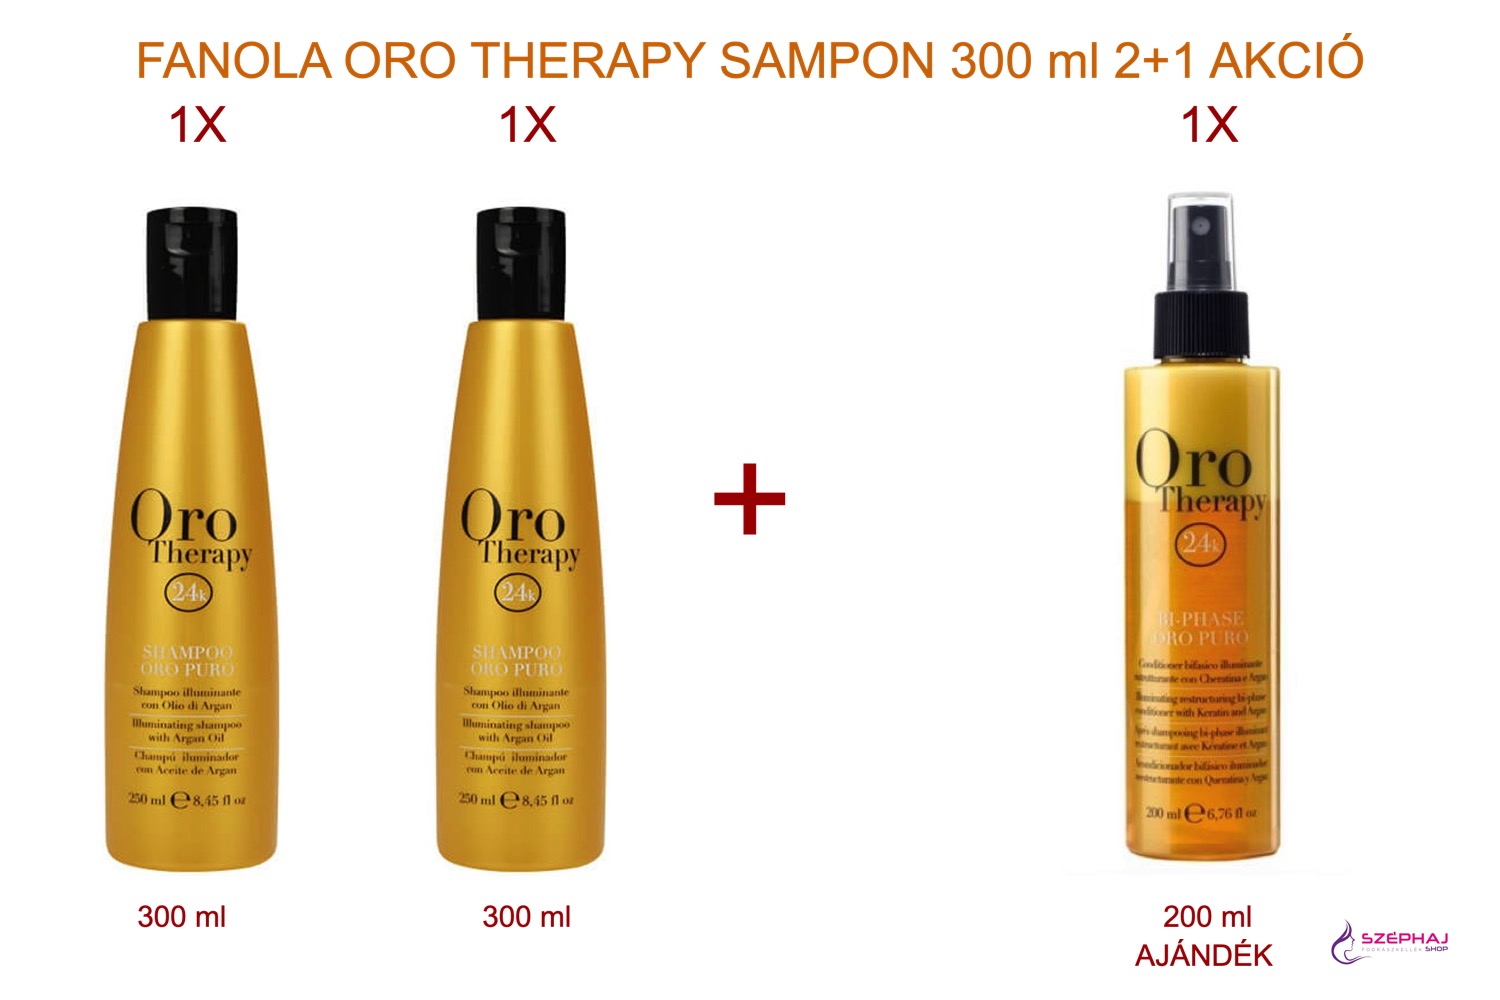 FANOLA Oro Therapy Shampoo 300 ml 2+1 AKCIÓ